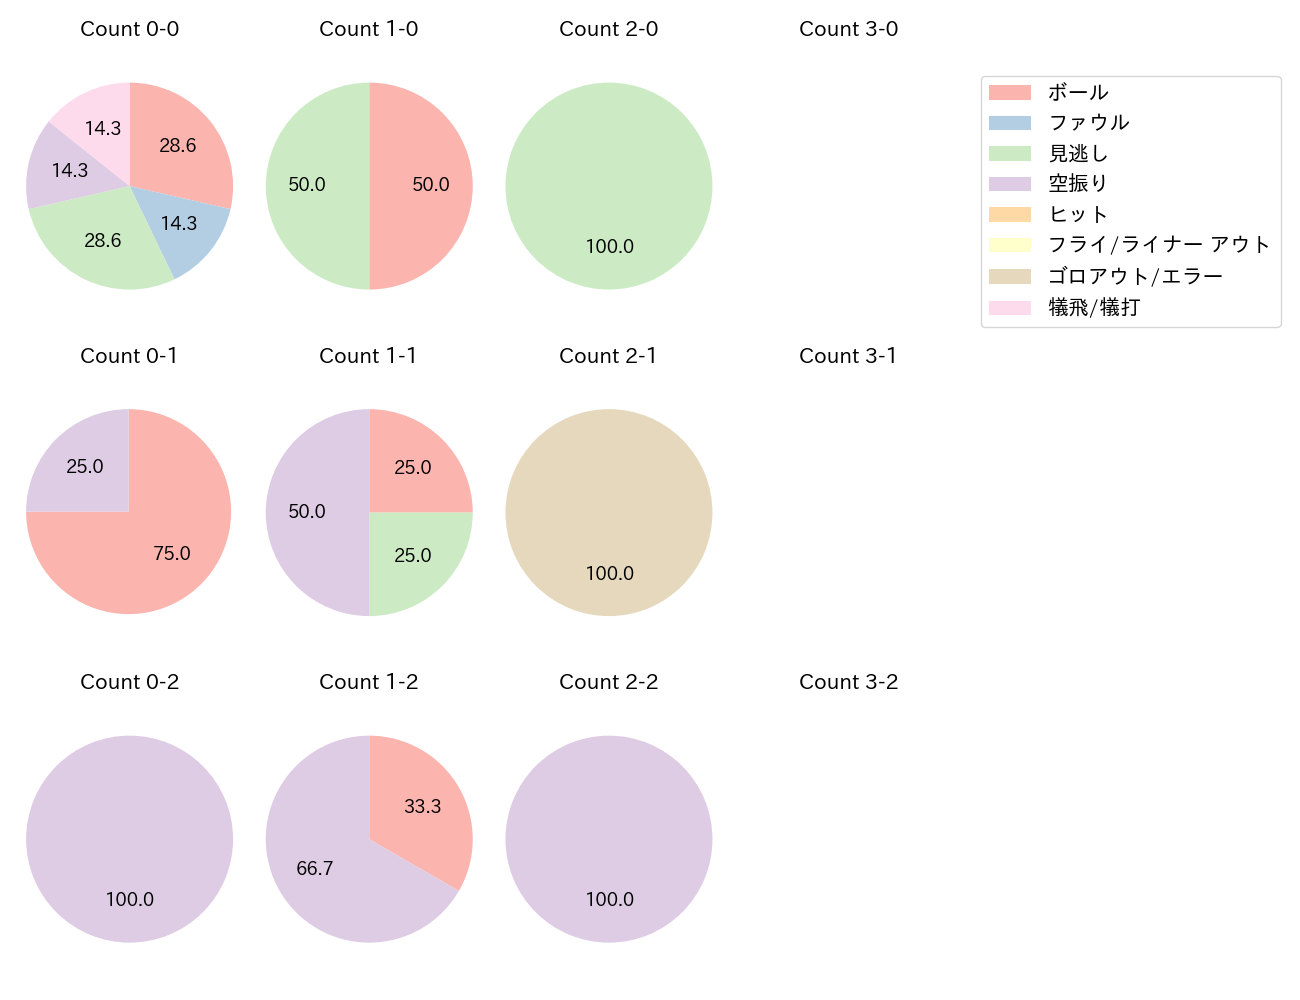 京山 将弥の球数分布(2021年9月)